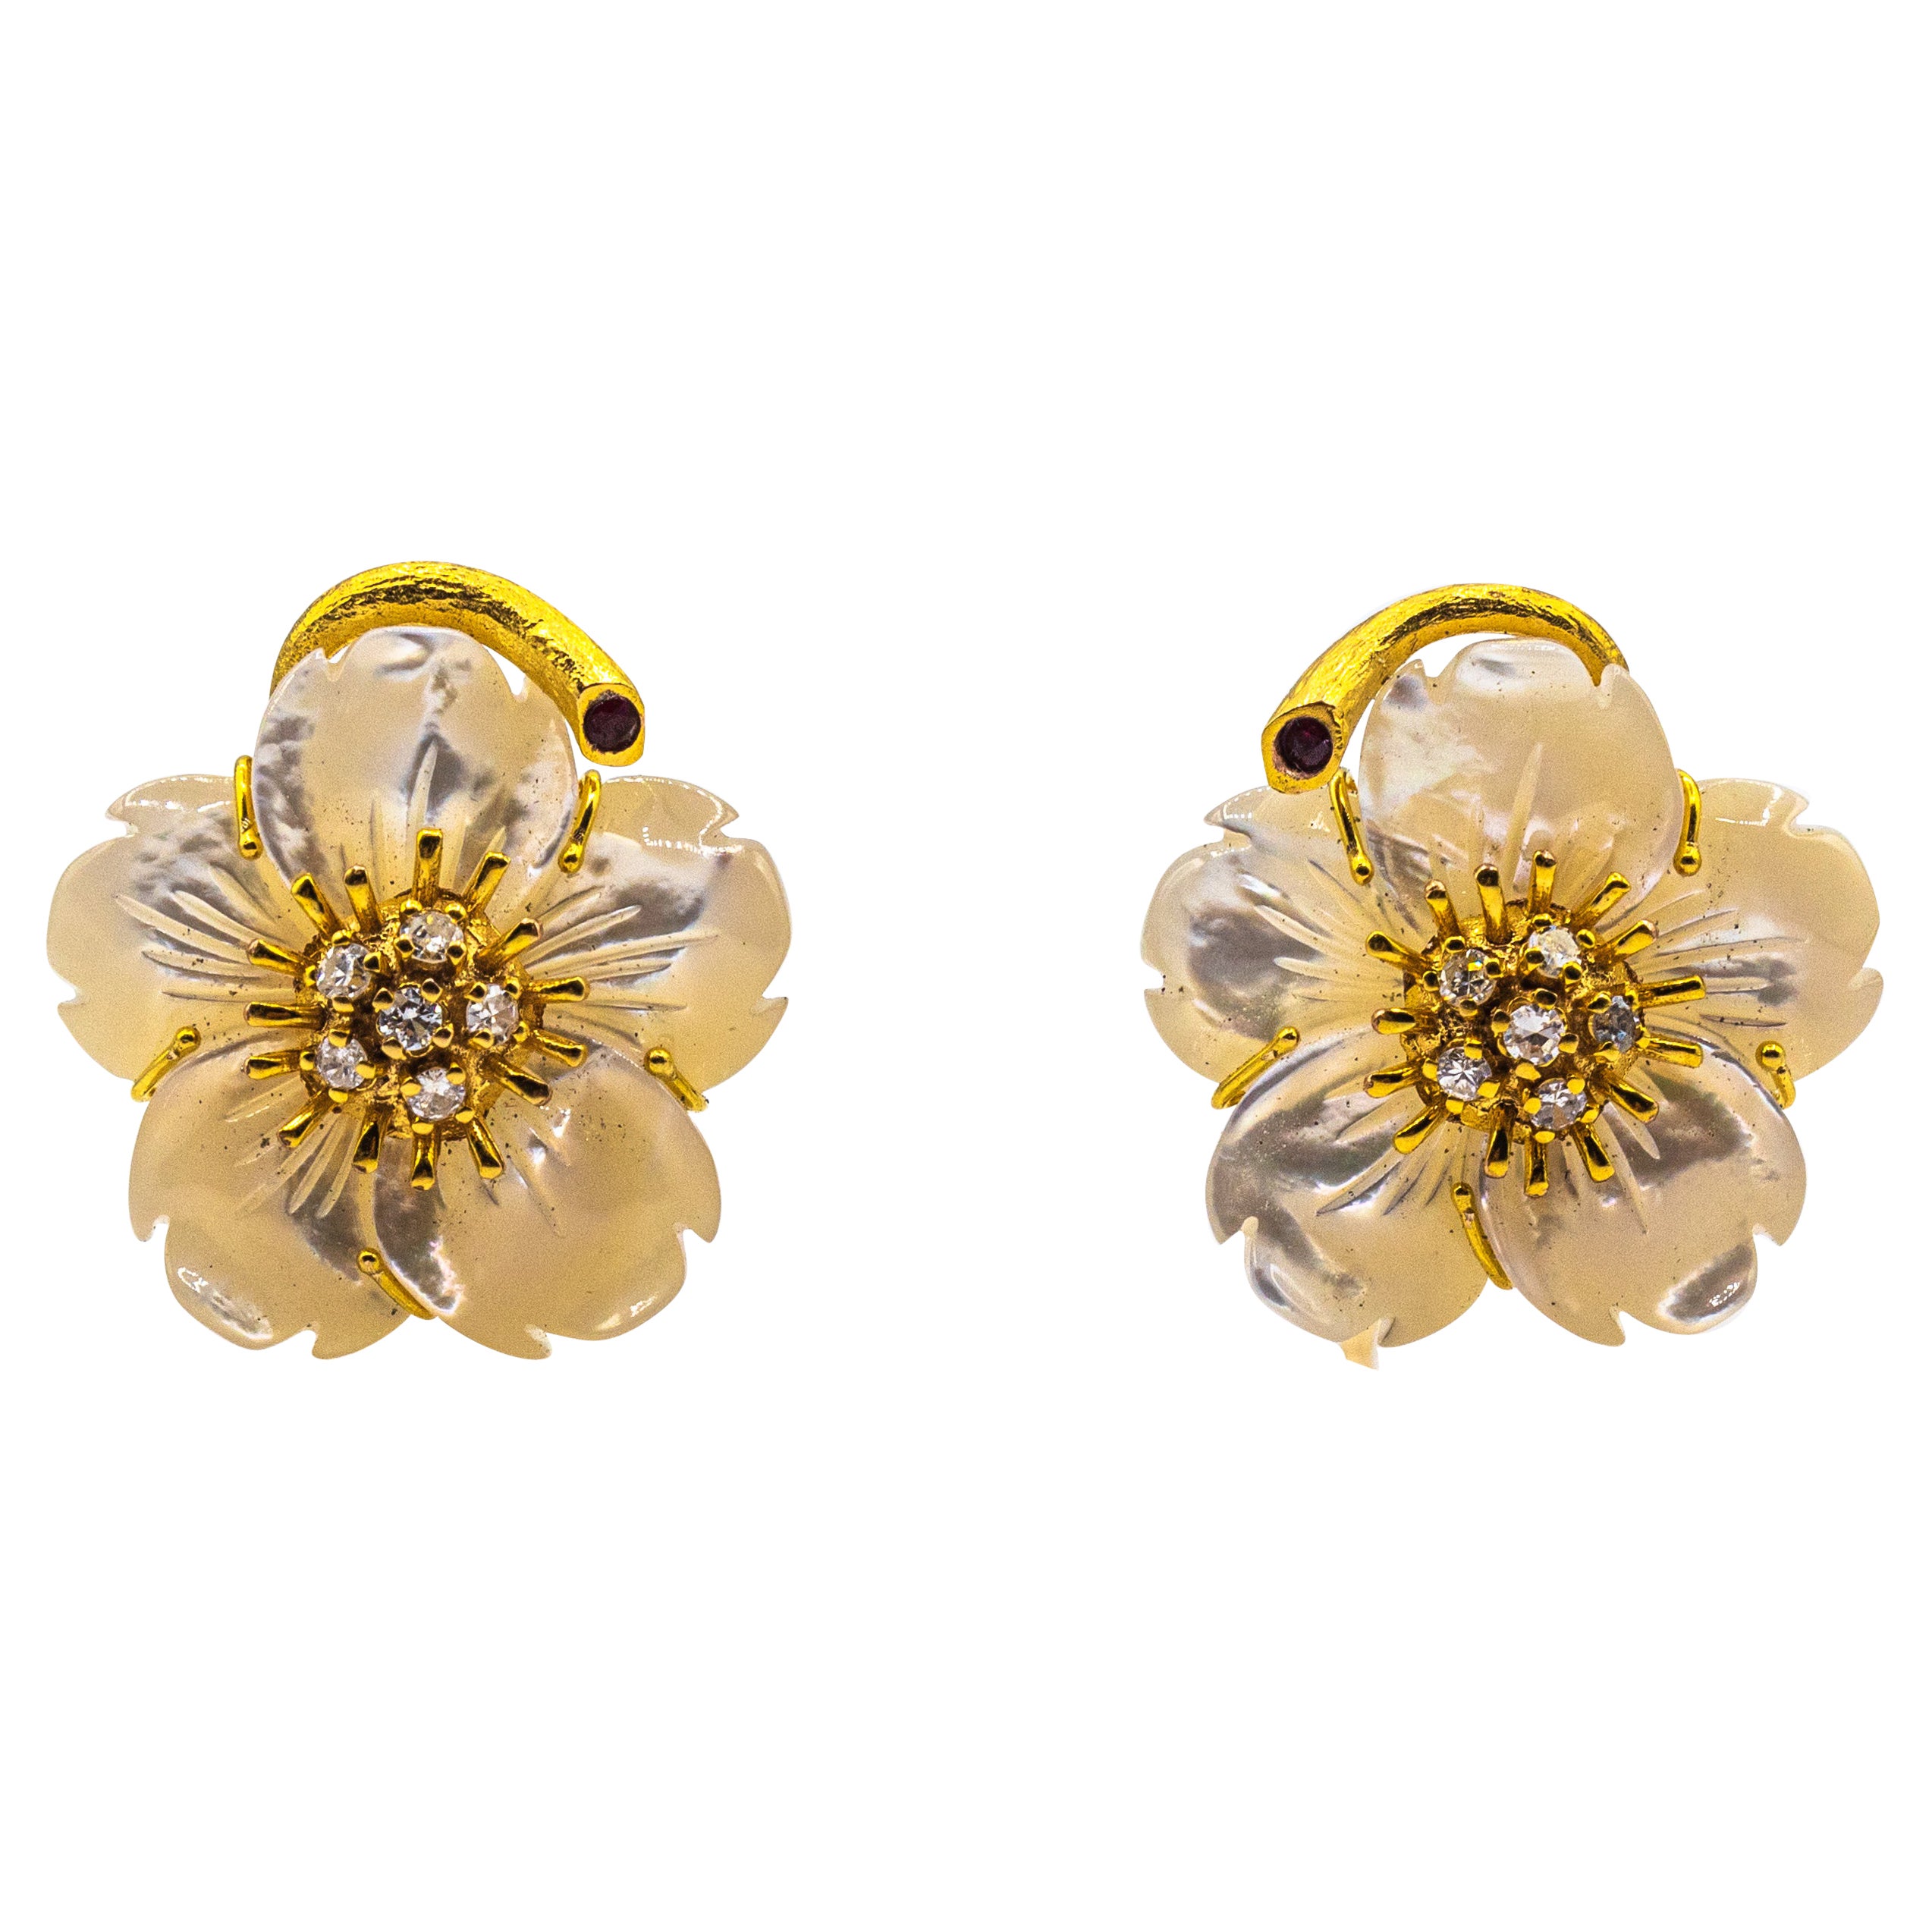 Jugendstil-Ohrringe mit weißen Diamanten, Rubin und Perlmutt in Gelbgold